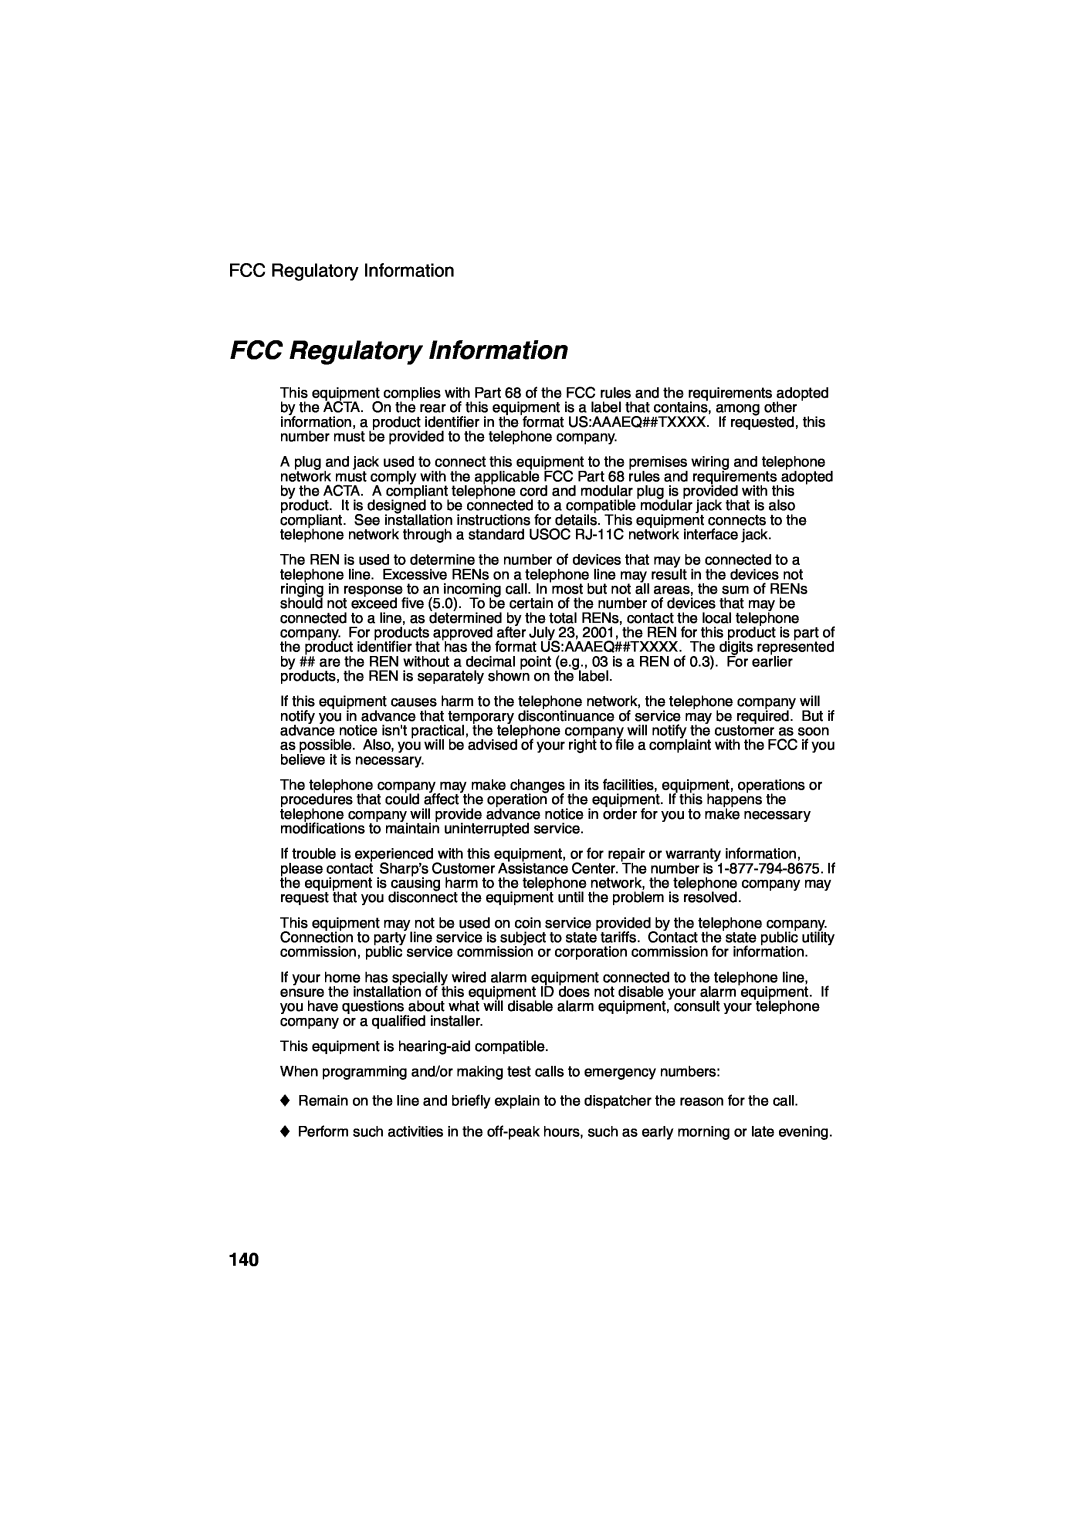 Sharp UX-CD600 operation manual FCC Regulatory Information 